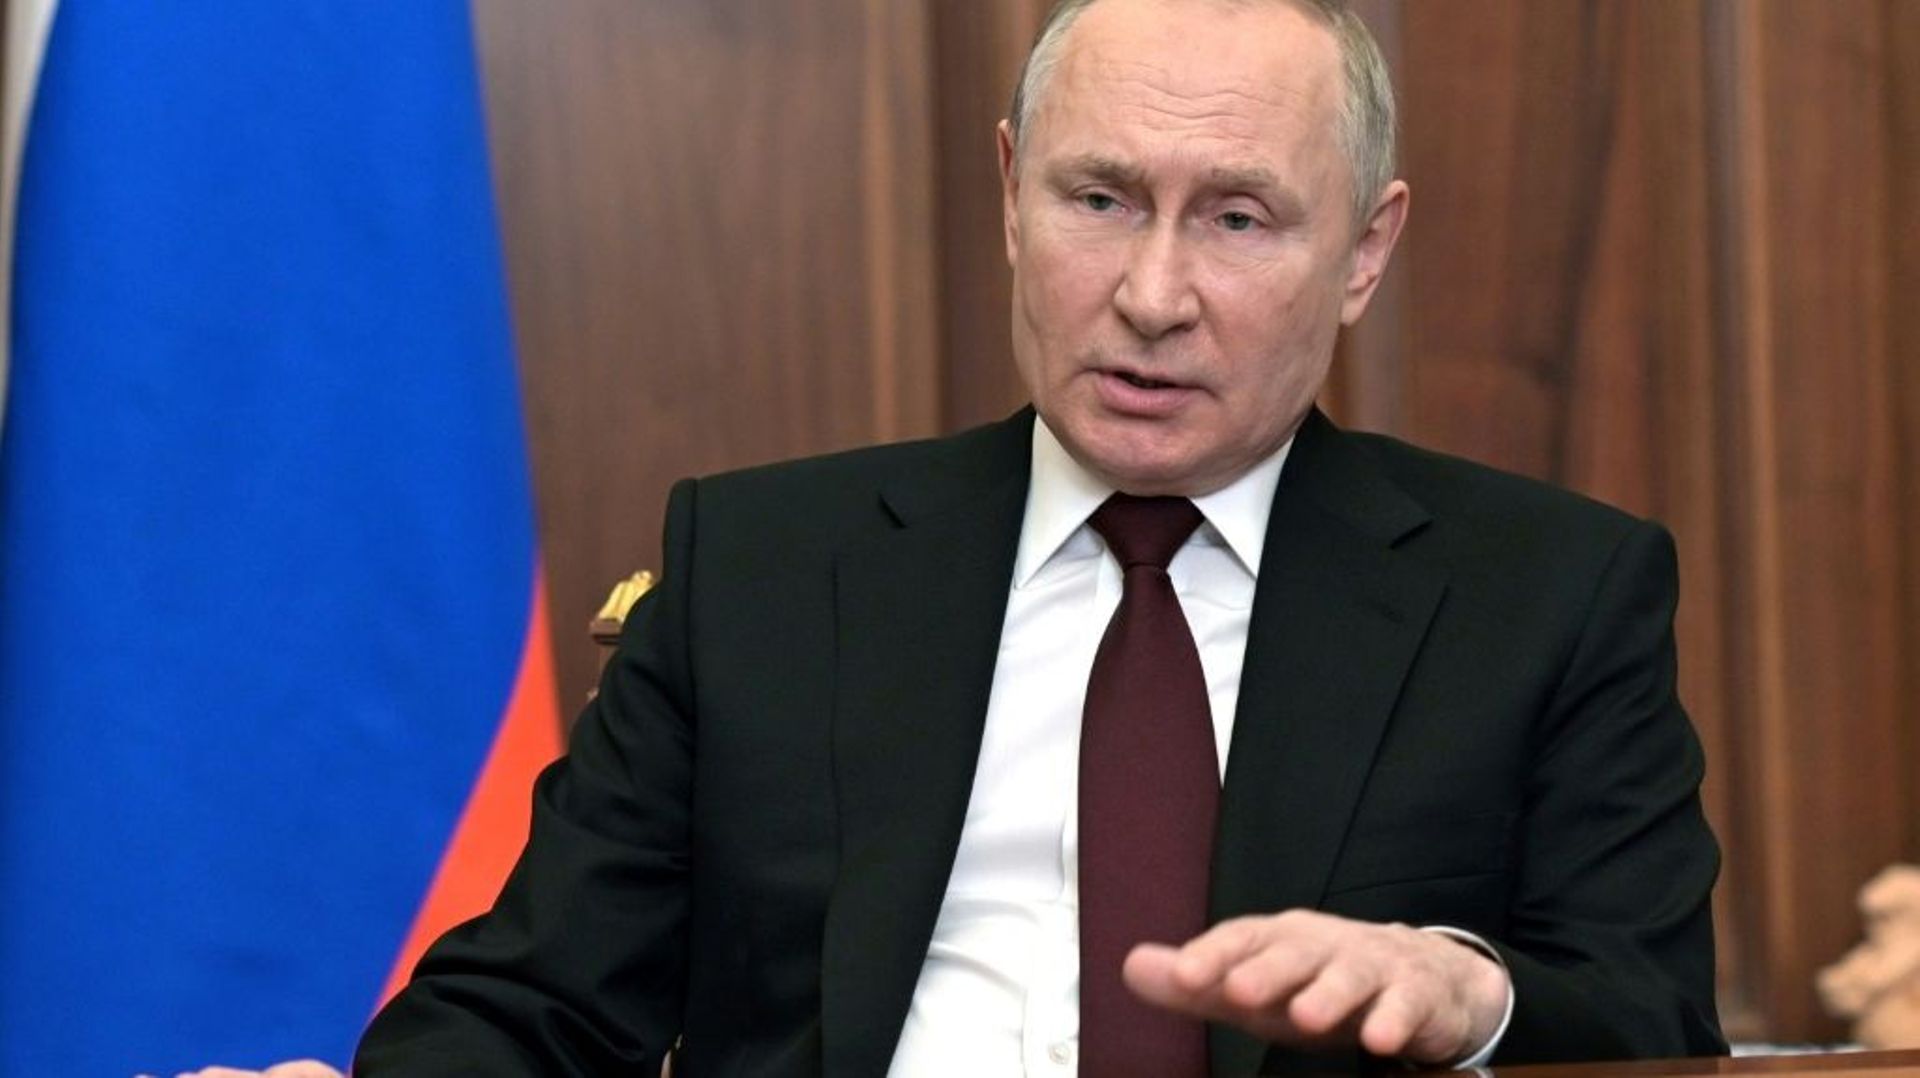 Le président russe Vladimir Poutine lors d’une allocution télévisée le 21 février 2022 à Moscou